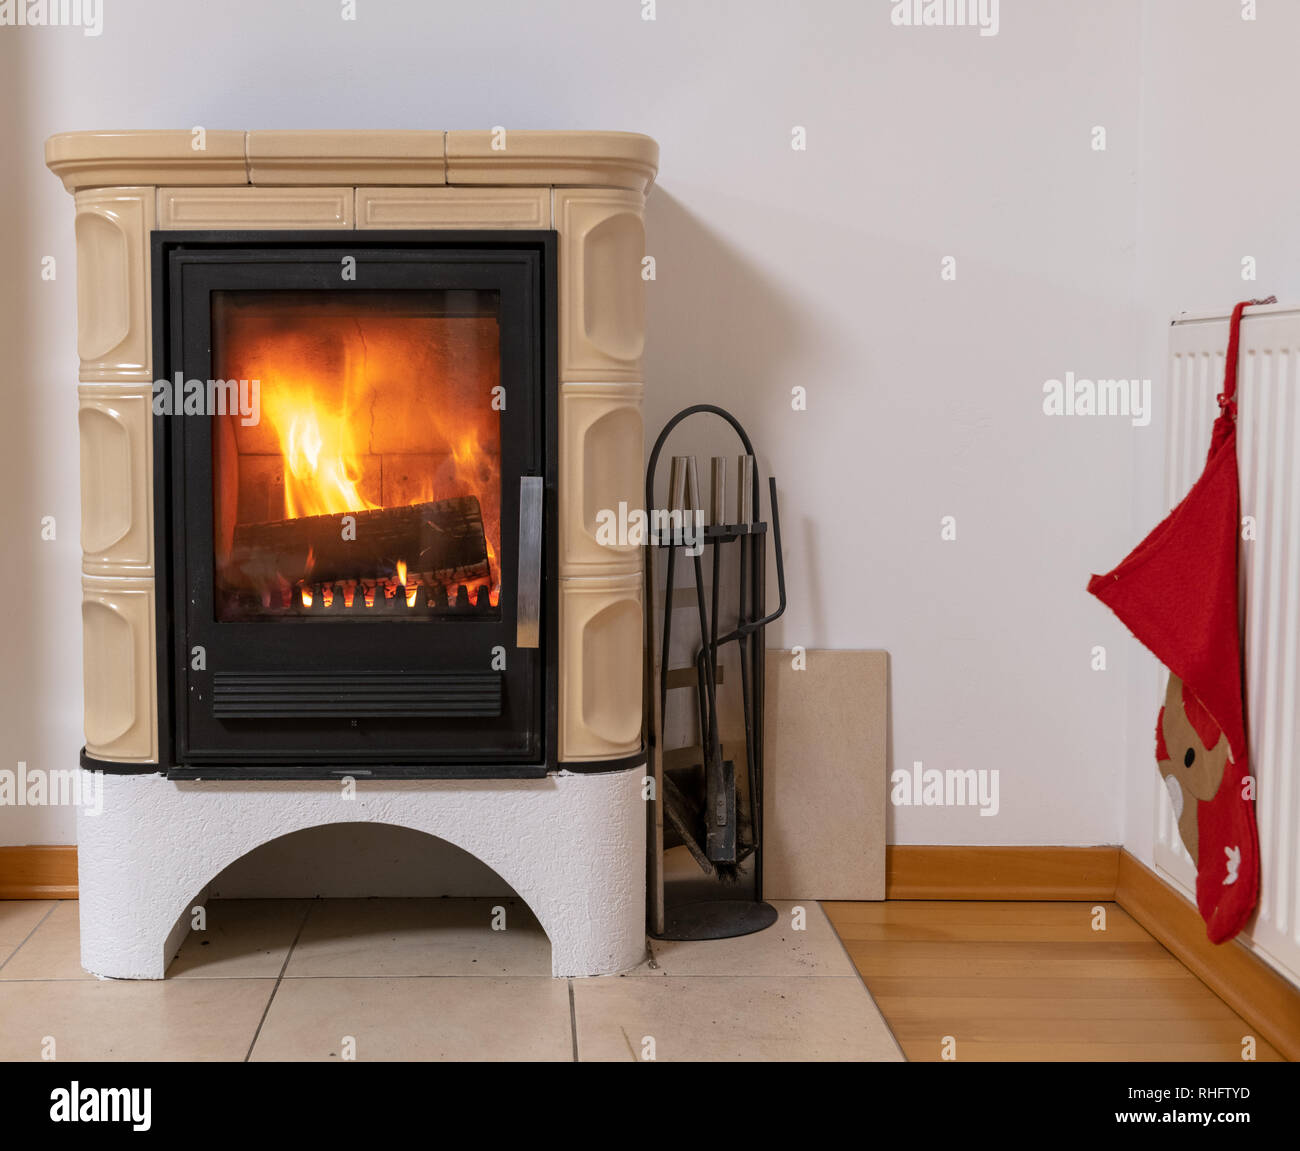 Kachelofen mit Feuer im Inneren, gemütlichen und warmen Innenraum Szene,  Heizung im Winter, Weihnachten Dekoration an der Wand Stockfotografie -  Alamy